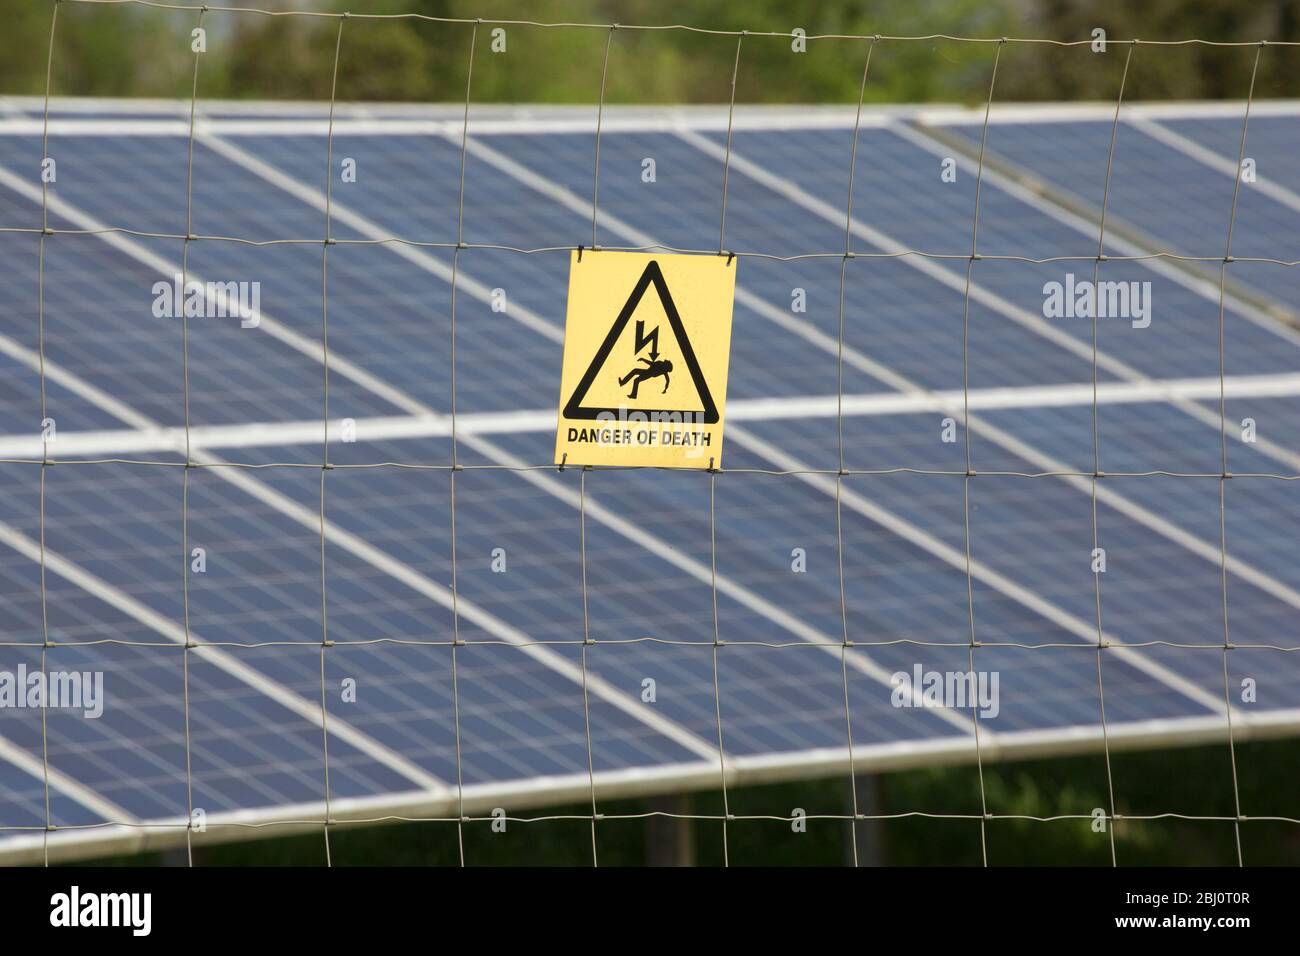 Un panneau d'avertissement à côté d'une ferme solaire indiquant un danger d'électrocution et de mort. North Dorset Angleterre Royaume-Uni GB Banque D'Images